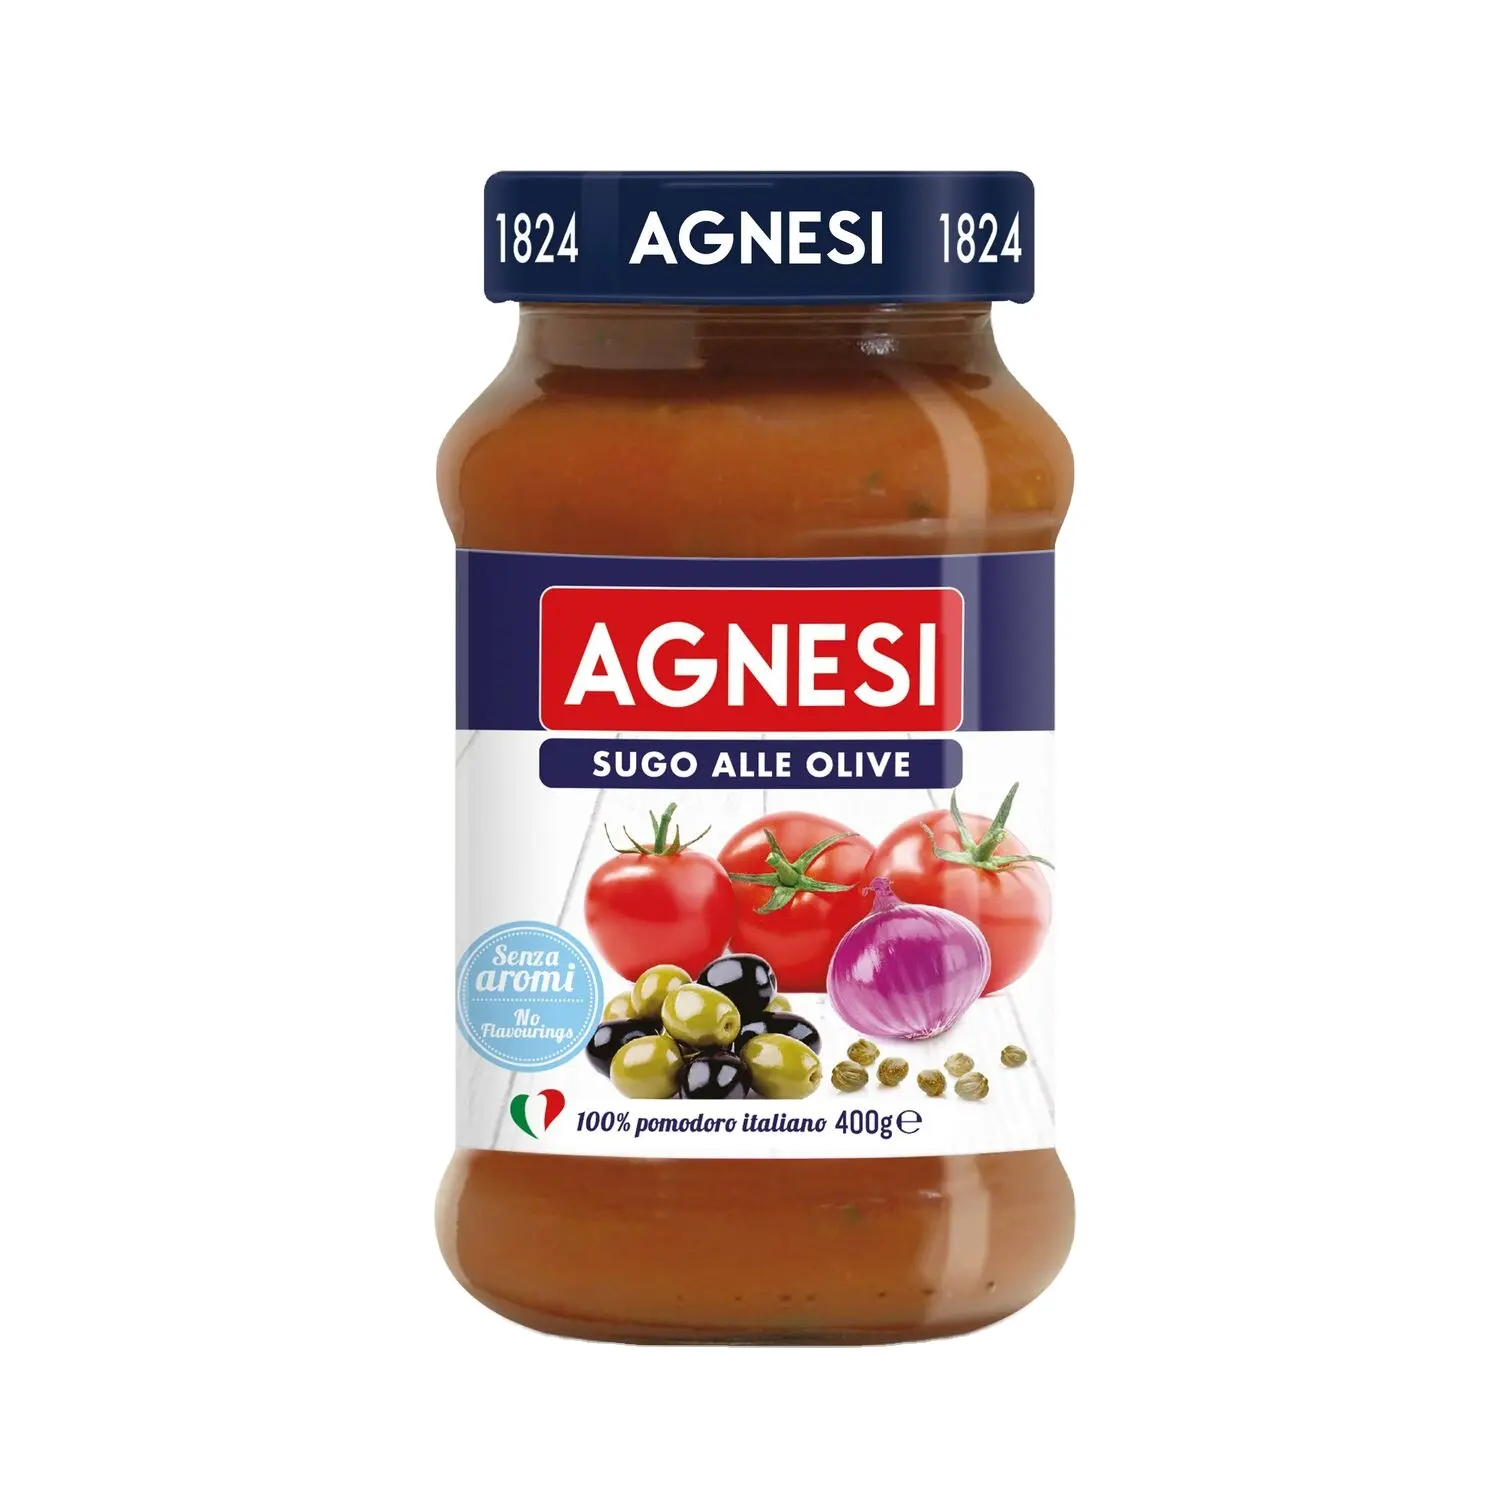 プレミアムオリーブパスタソース-AGNESISugo Olive 400g-添加物なしでオリーブの喜びを体験